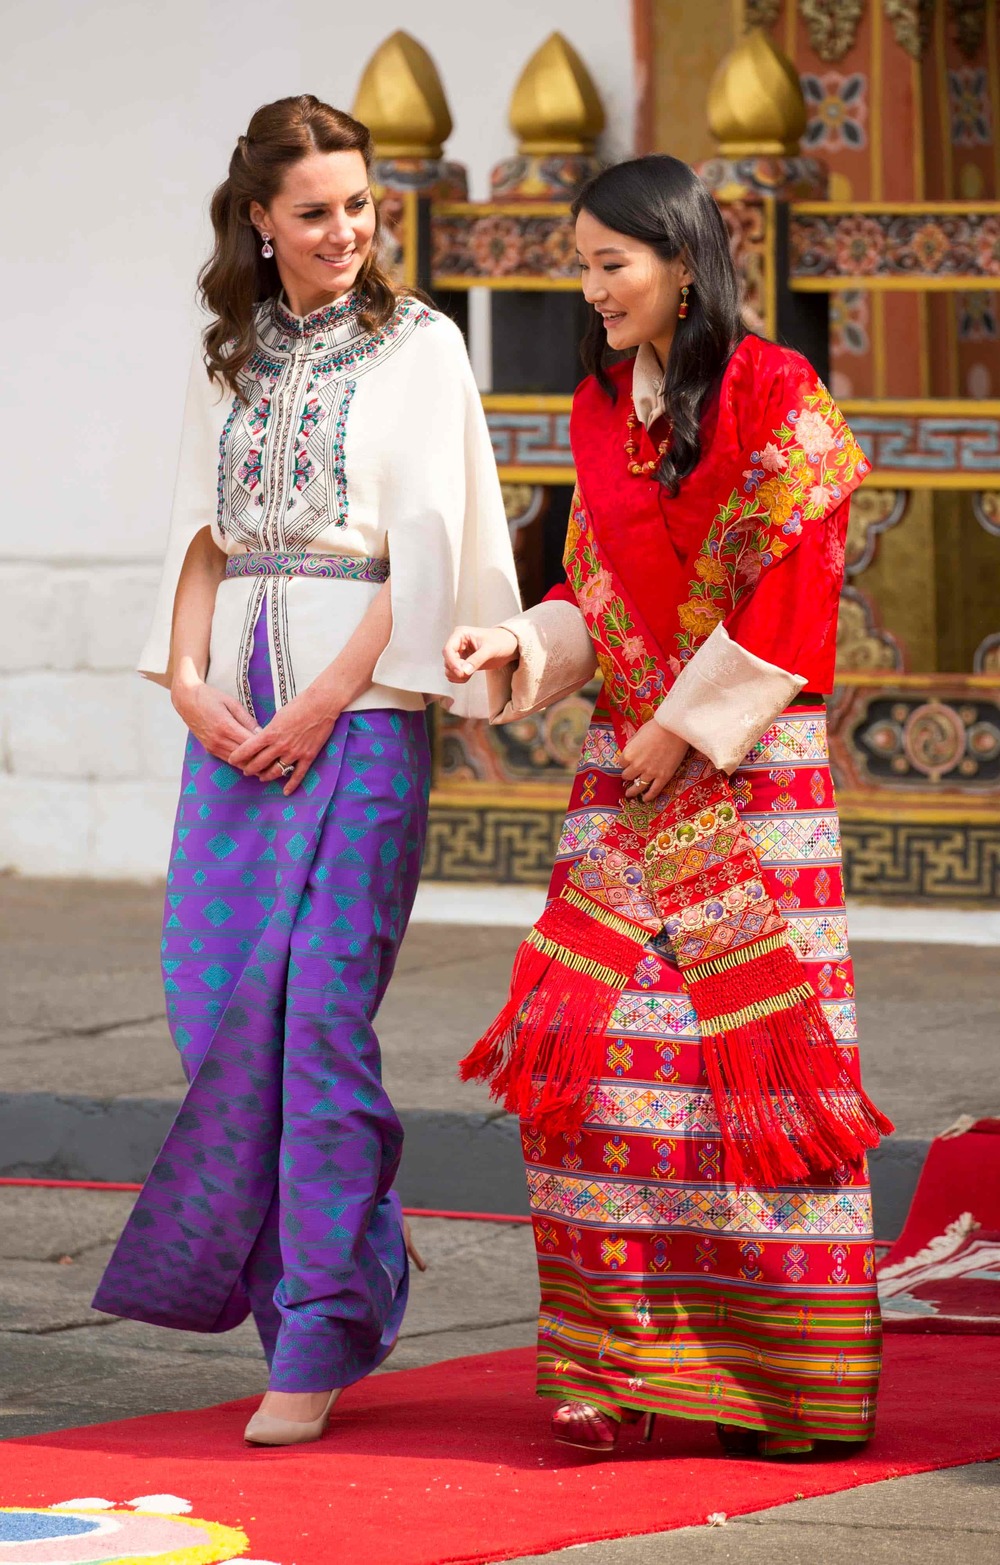  
Hoàng hậu Bhutan đi bên cạnh và trò chuyện với một tượng đài về nhan sắc và thời trang là công nương xứ Cambridge. (Ảnh: FB)